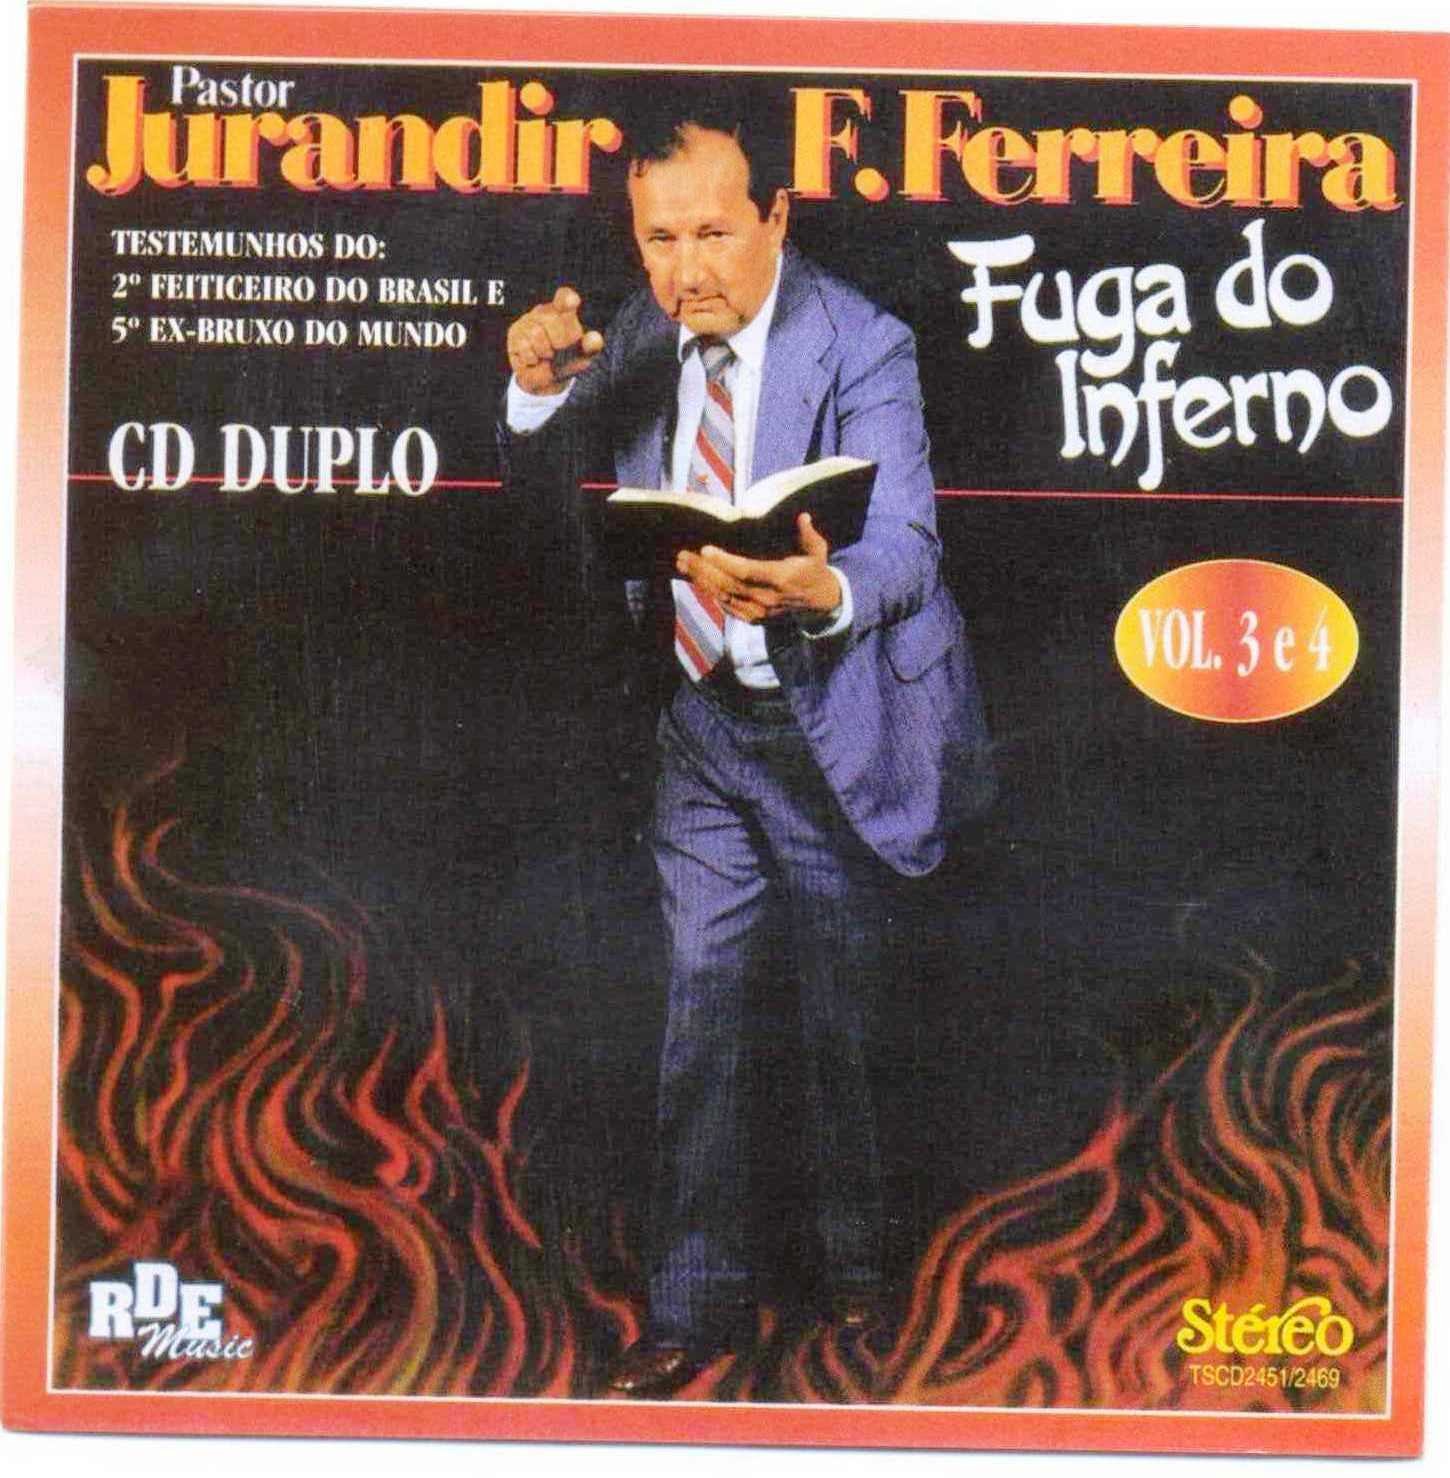 Jurandir Ferreira, Pastor - Testemunho  -  Fuga do Inferno - Volume 3 e 4